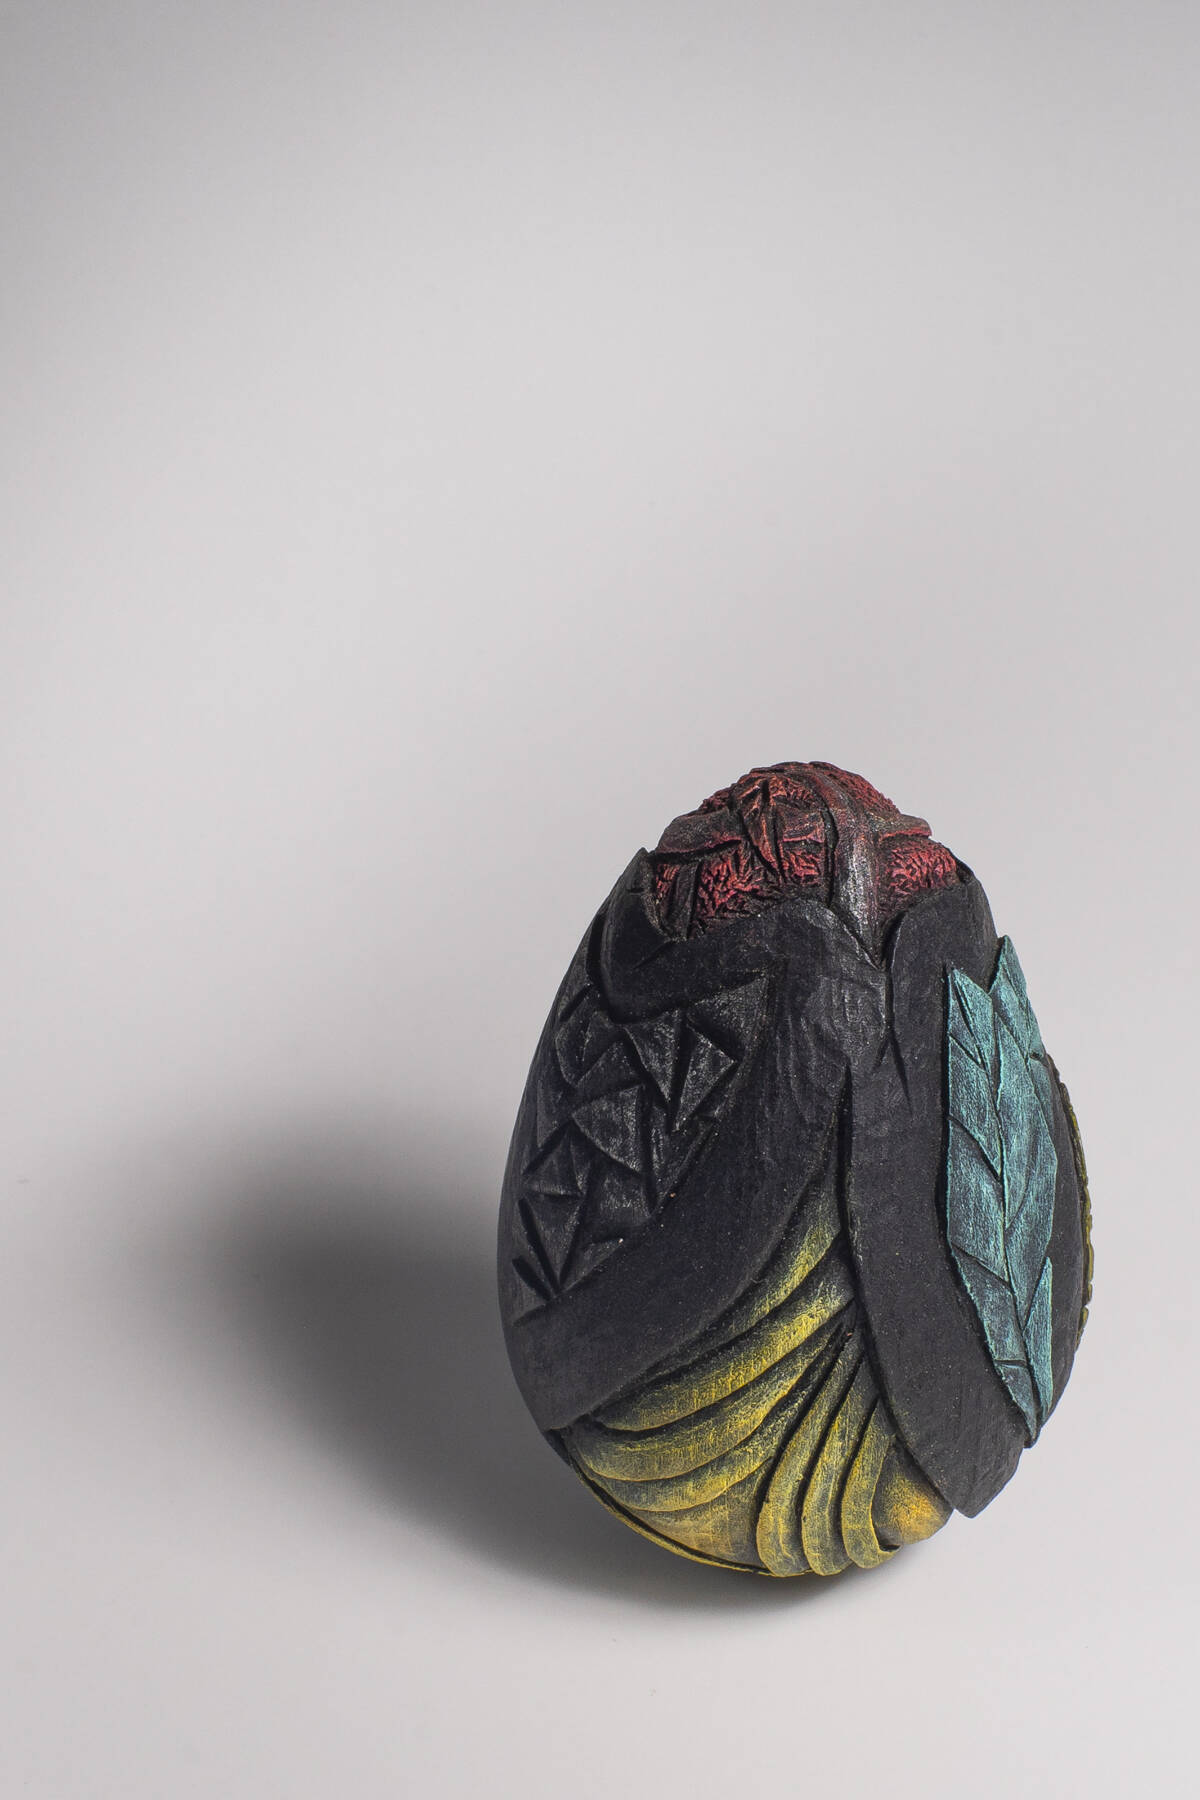 Dragon Egg, Sculpture pyrogravée - une création unique de Coralie Saramago - crédits photo : Boris Bineau